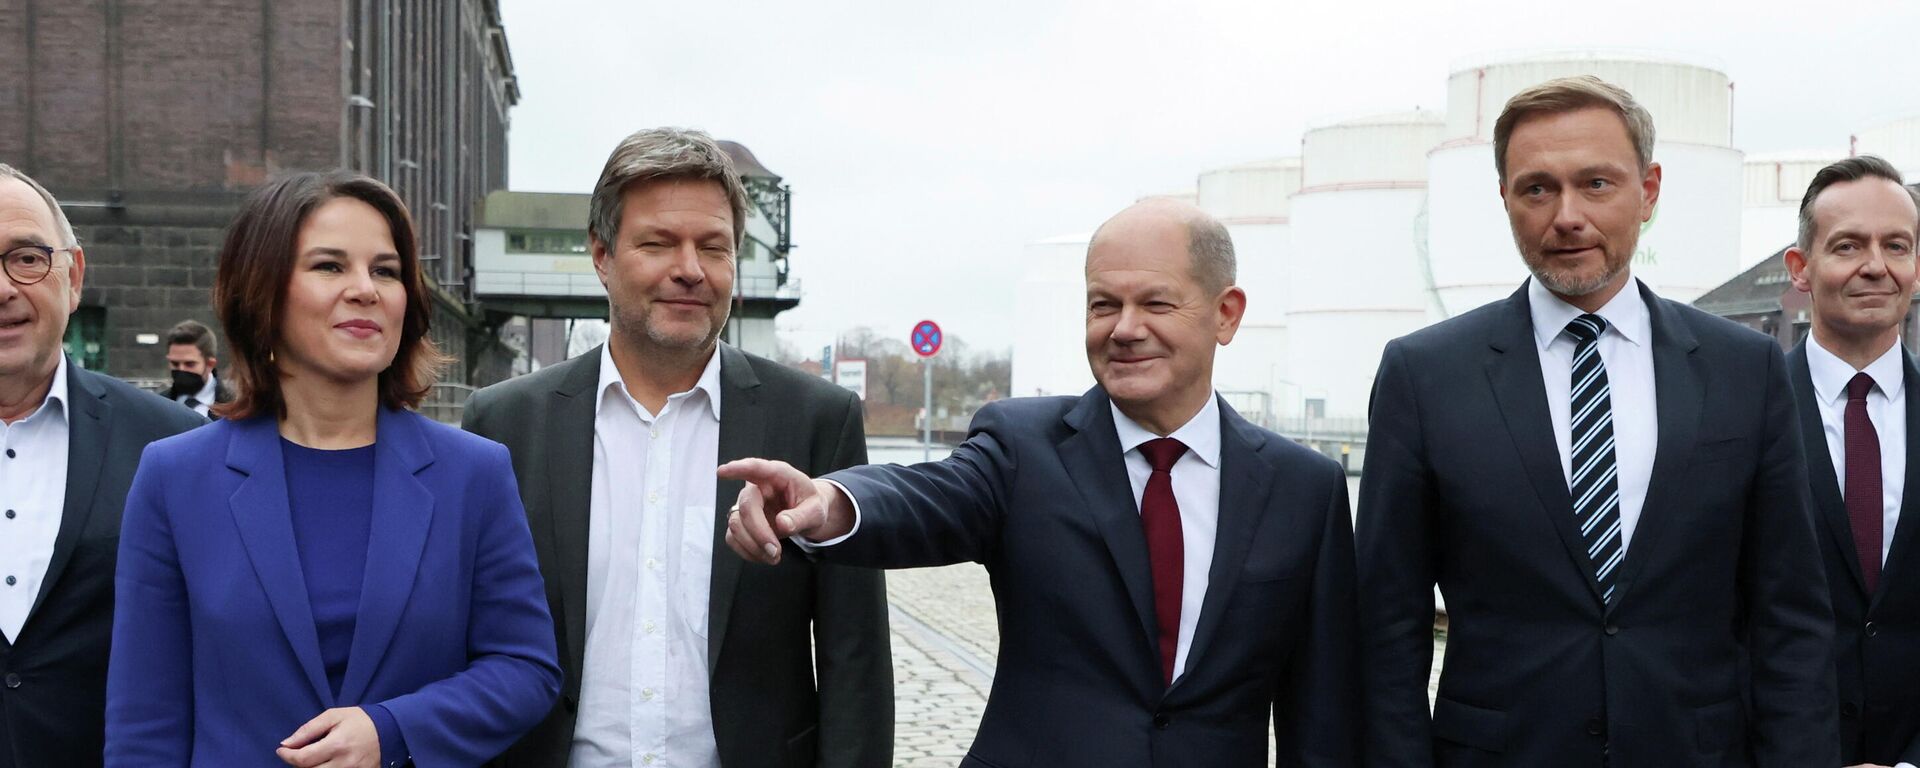 Almanya'da 'trafik lambası' koalisyon hükümeti anlaşması açıklandı: Müstakbel Başbakan SPD'li Olaf Scholz (sağdan üçüncü), Yeşiller Eşbaşkanları Robert Habeck ile Annalena Baerbock, FDP lideri Christian Lindner, SPD liderleri Norbert Walter-Borjans ile Saskia Esken'le birlikte basın toplantısı düzenledi. - Sputnik Türkiye, 1920, 24.11.2021